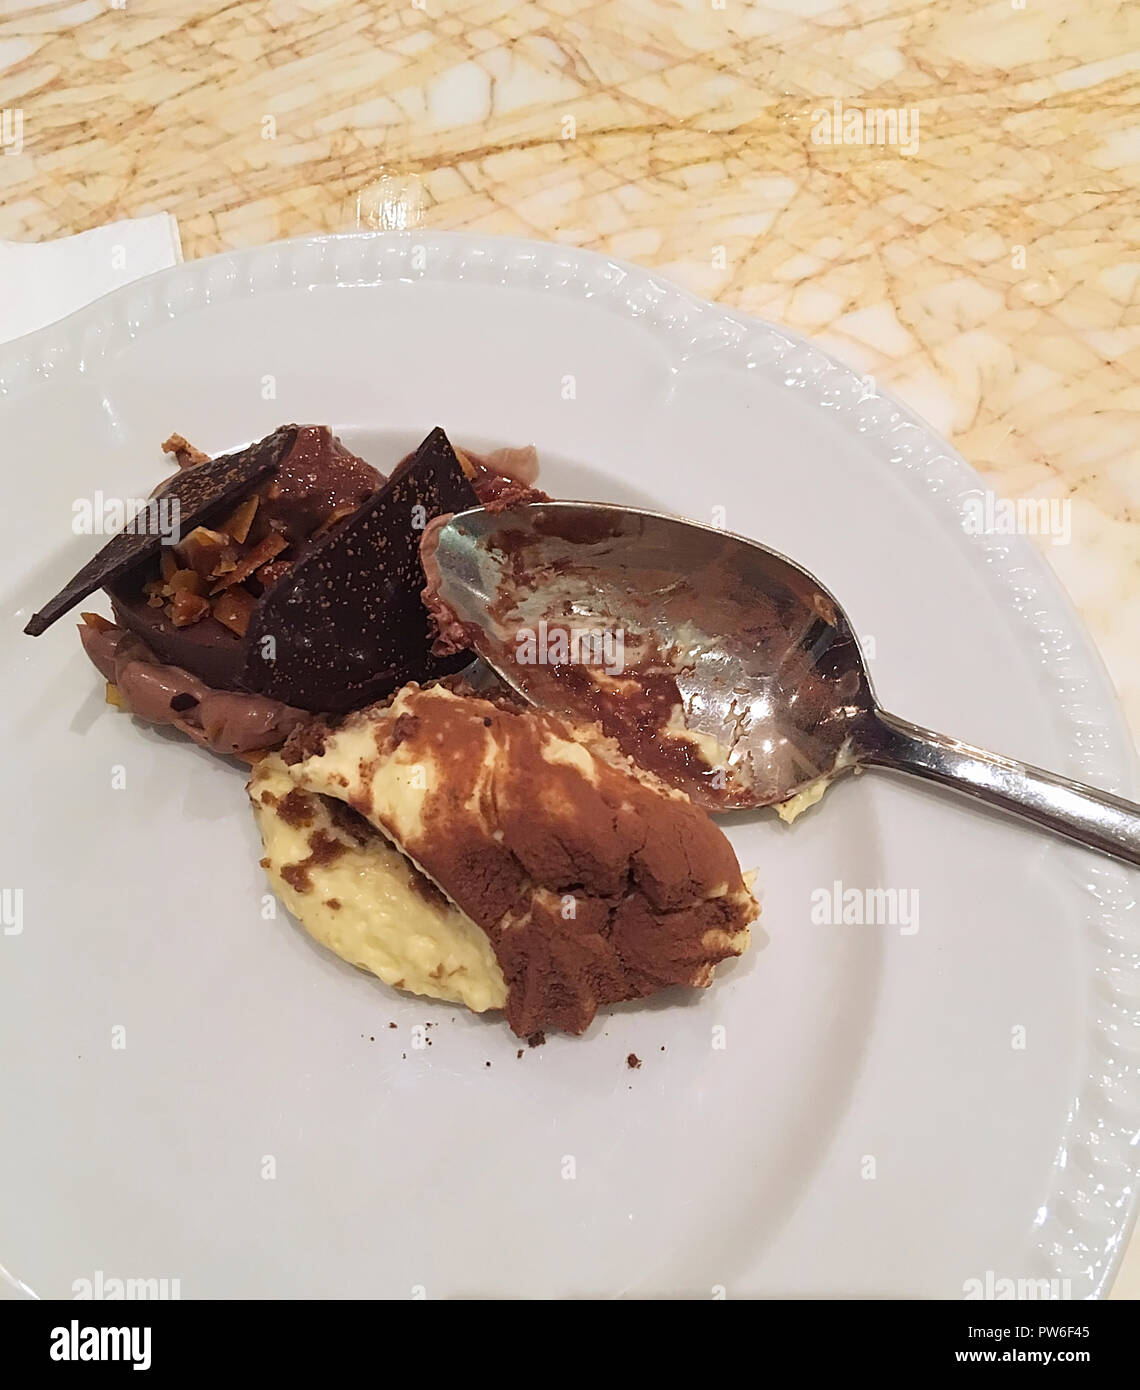 Cremoso budino di cioccolato pronto a mangiare su una piastra bianca con cucchiaio d'argento. Primo piano. Foto Stock